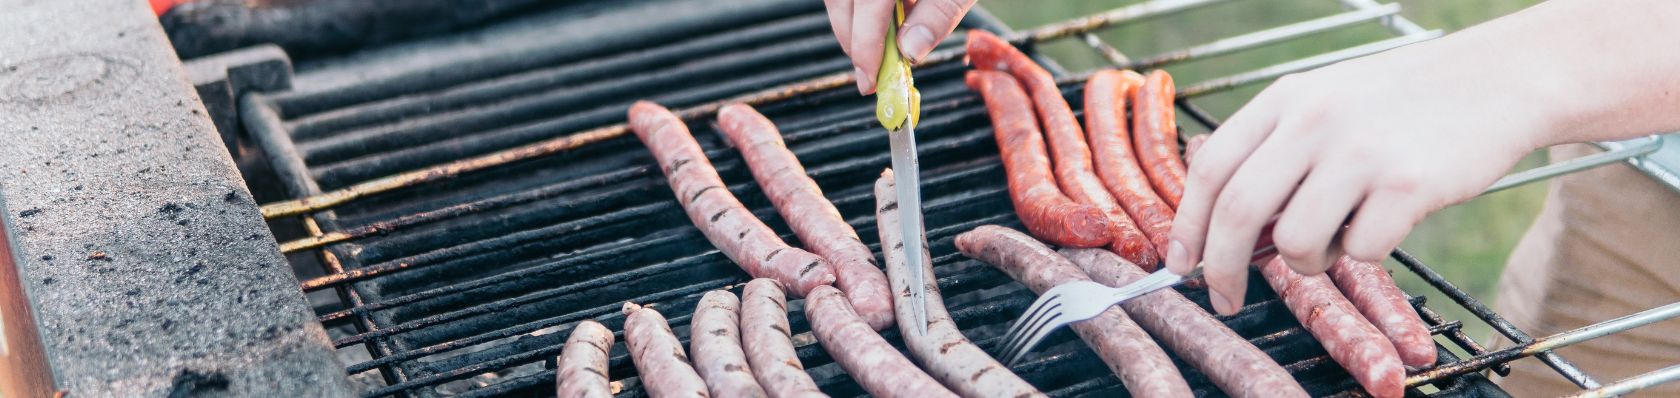 La migliore griglia barbecue del 2023 – Confronti e recensioni delle griglie barbecue